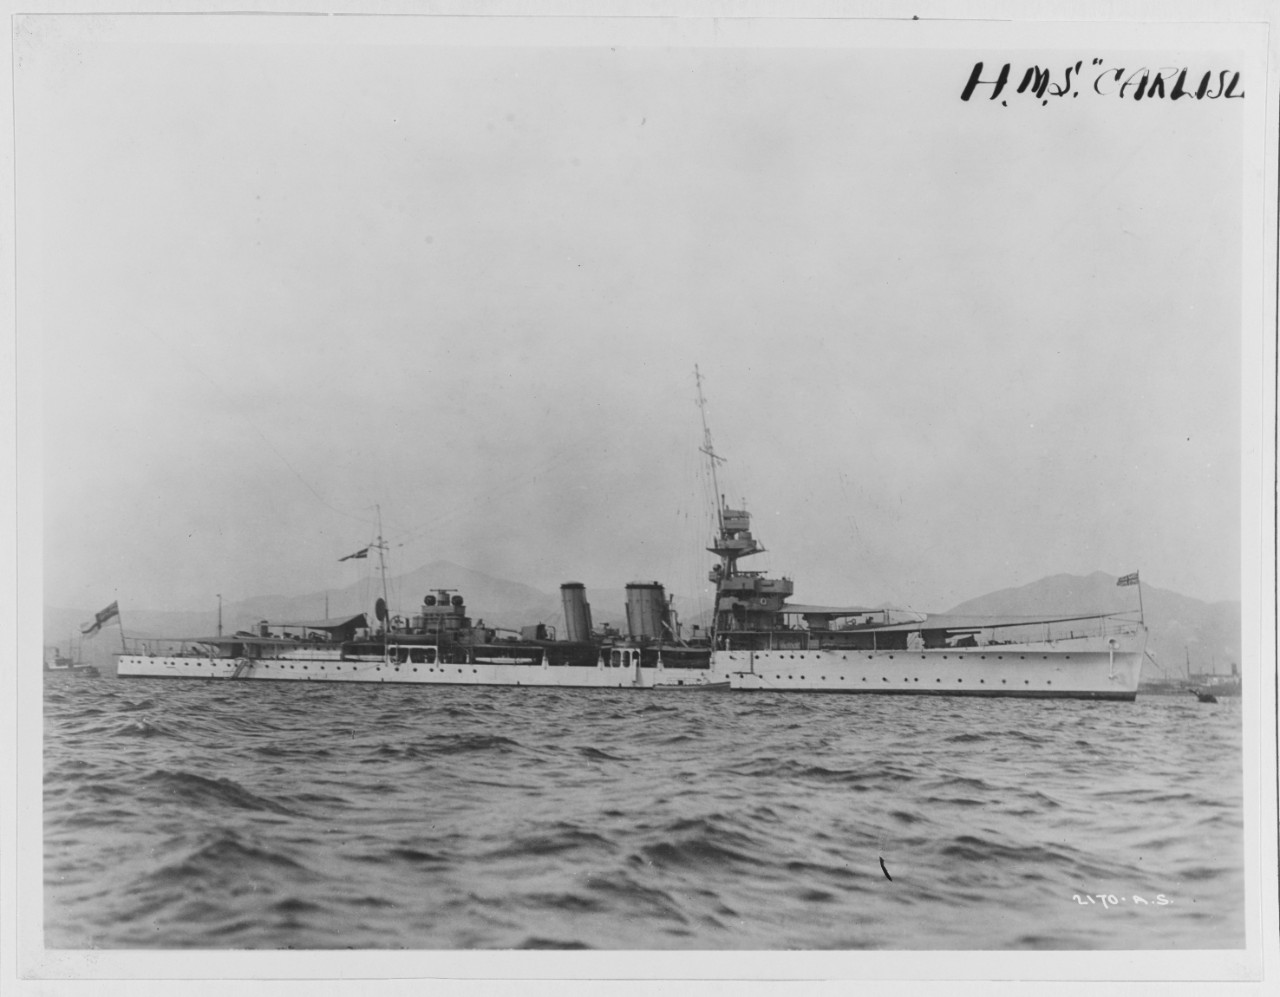 HMS CARLISLE